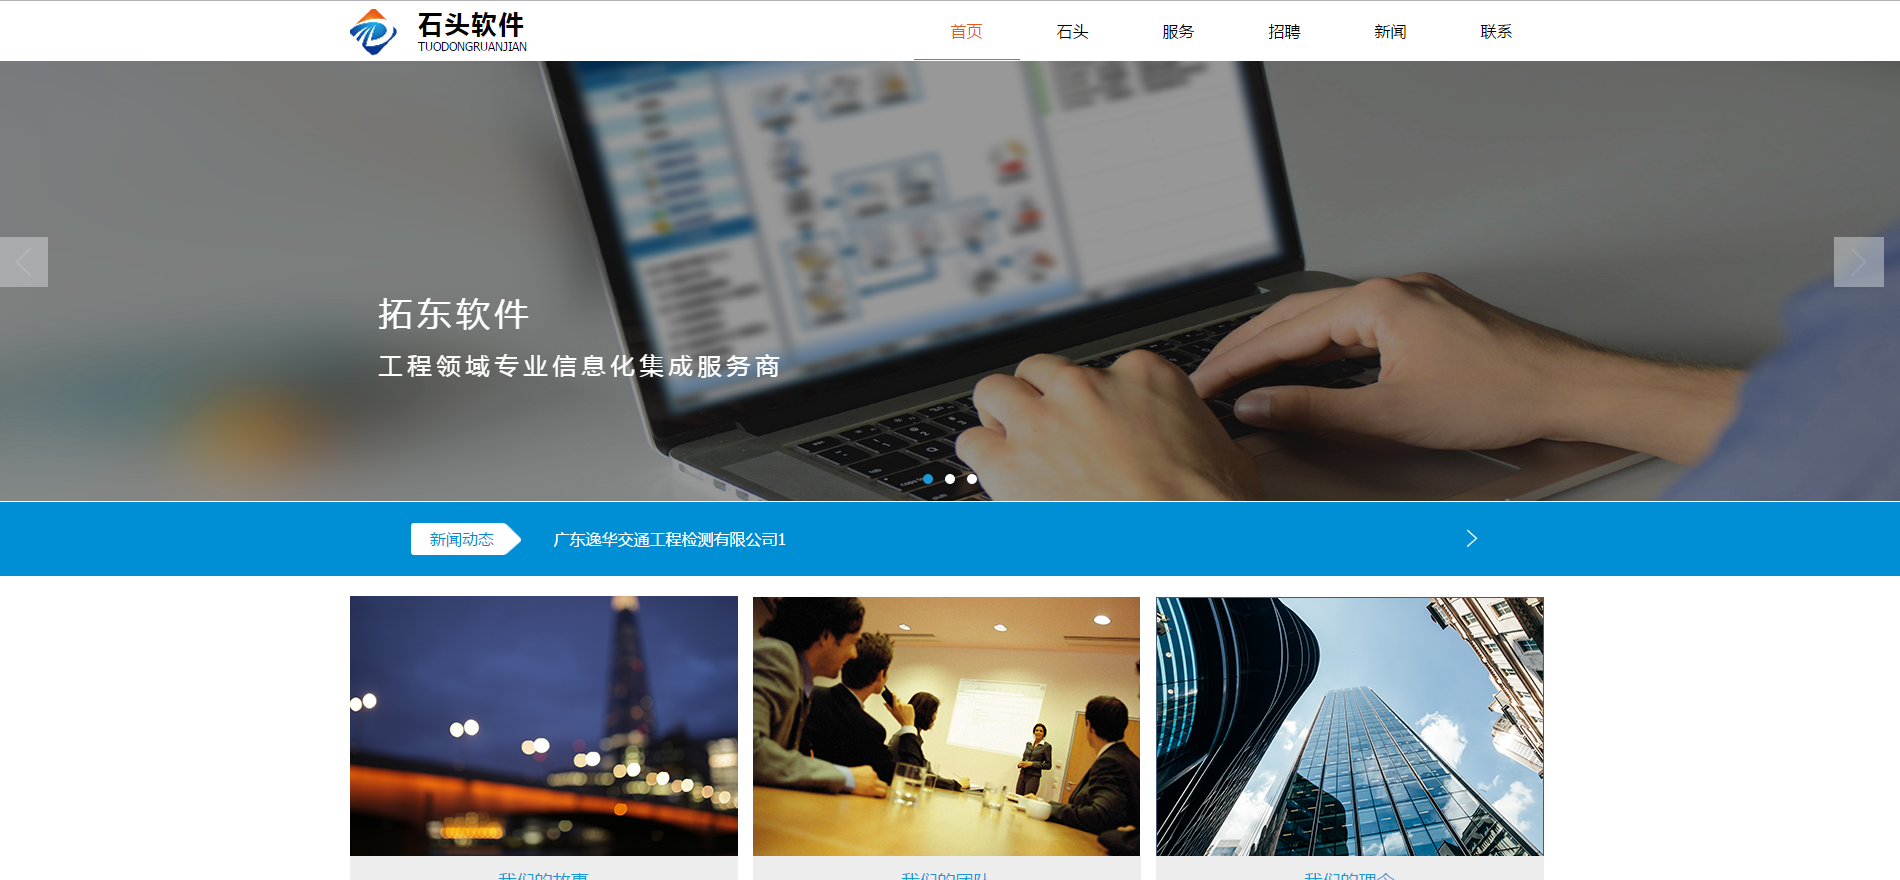 大气软件信息科技管理企业网站模板全套下载